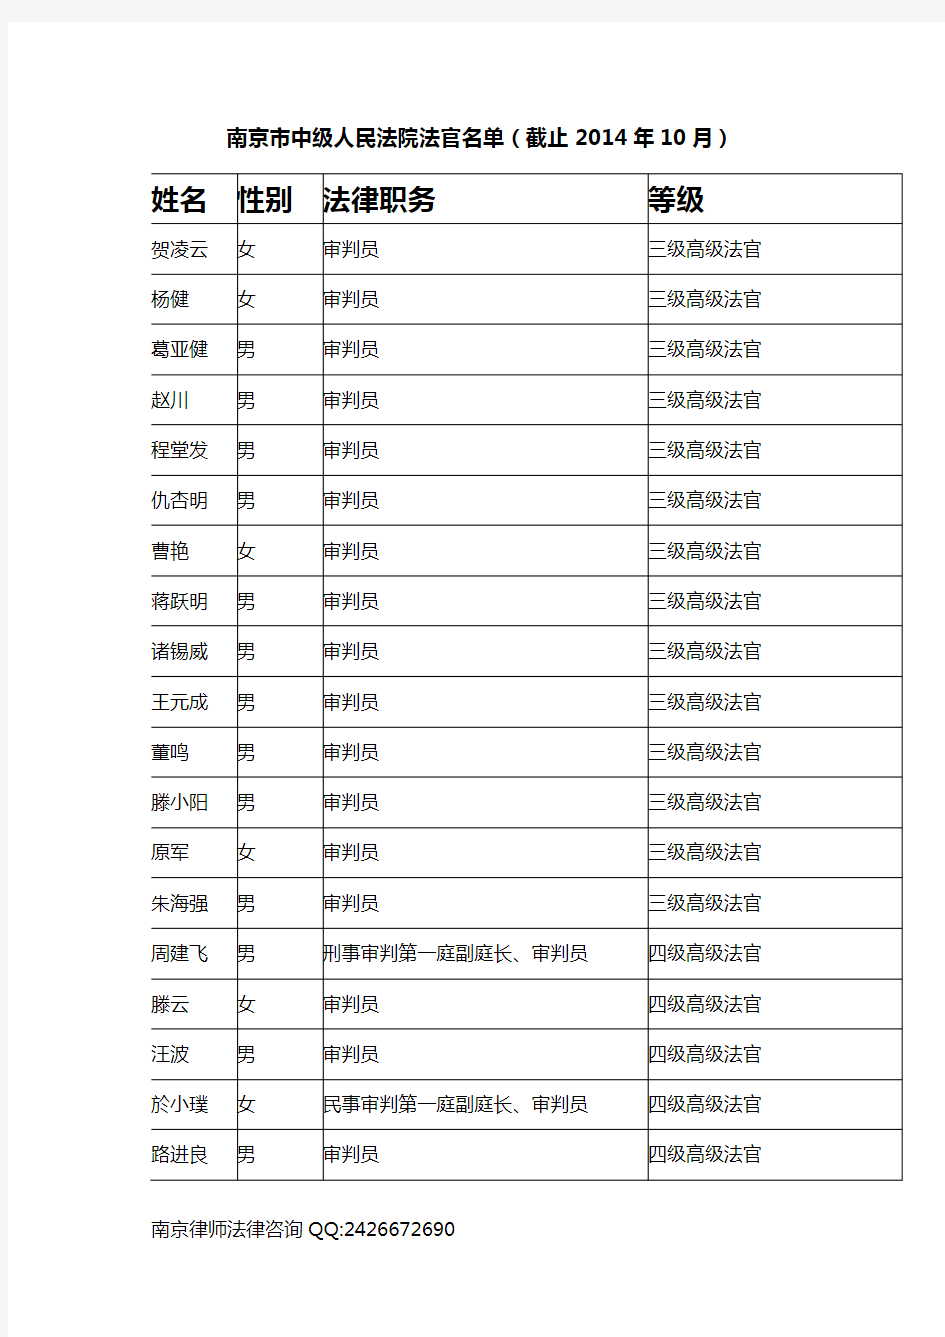 南京市中级人民法院法官一览表